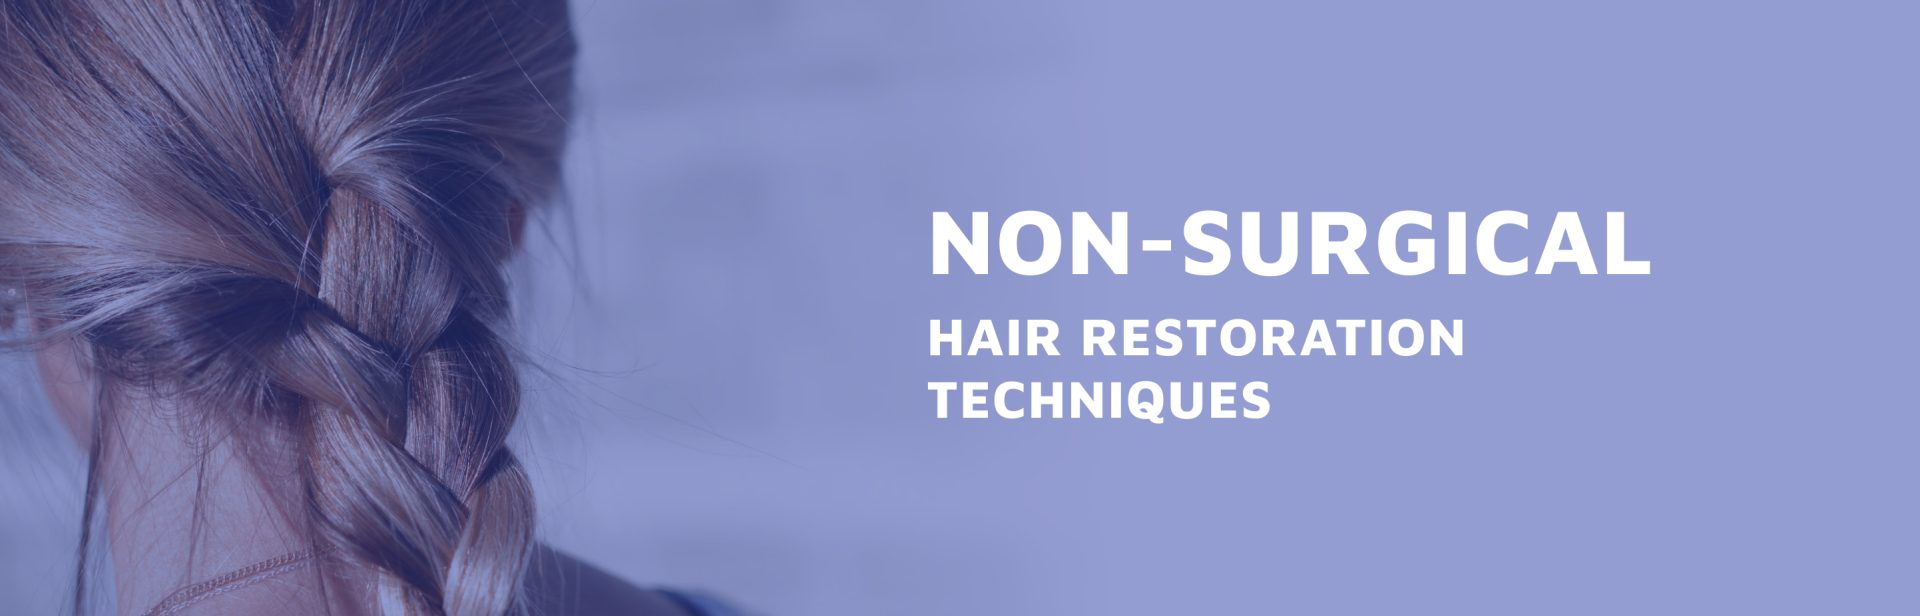 Non-Surgical-Hair-Restoration-Techniques